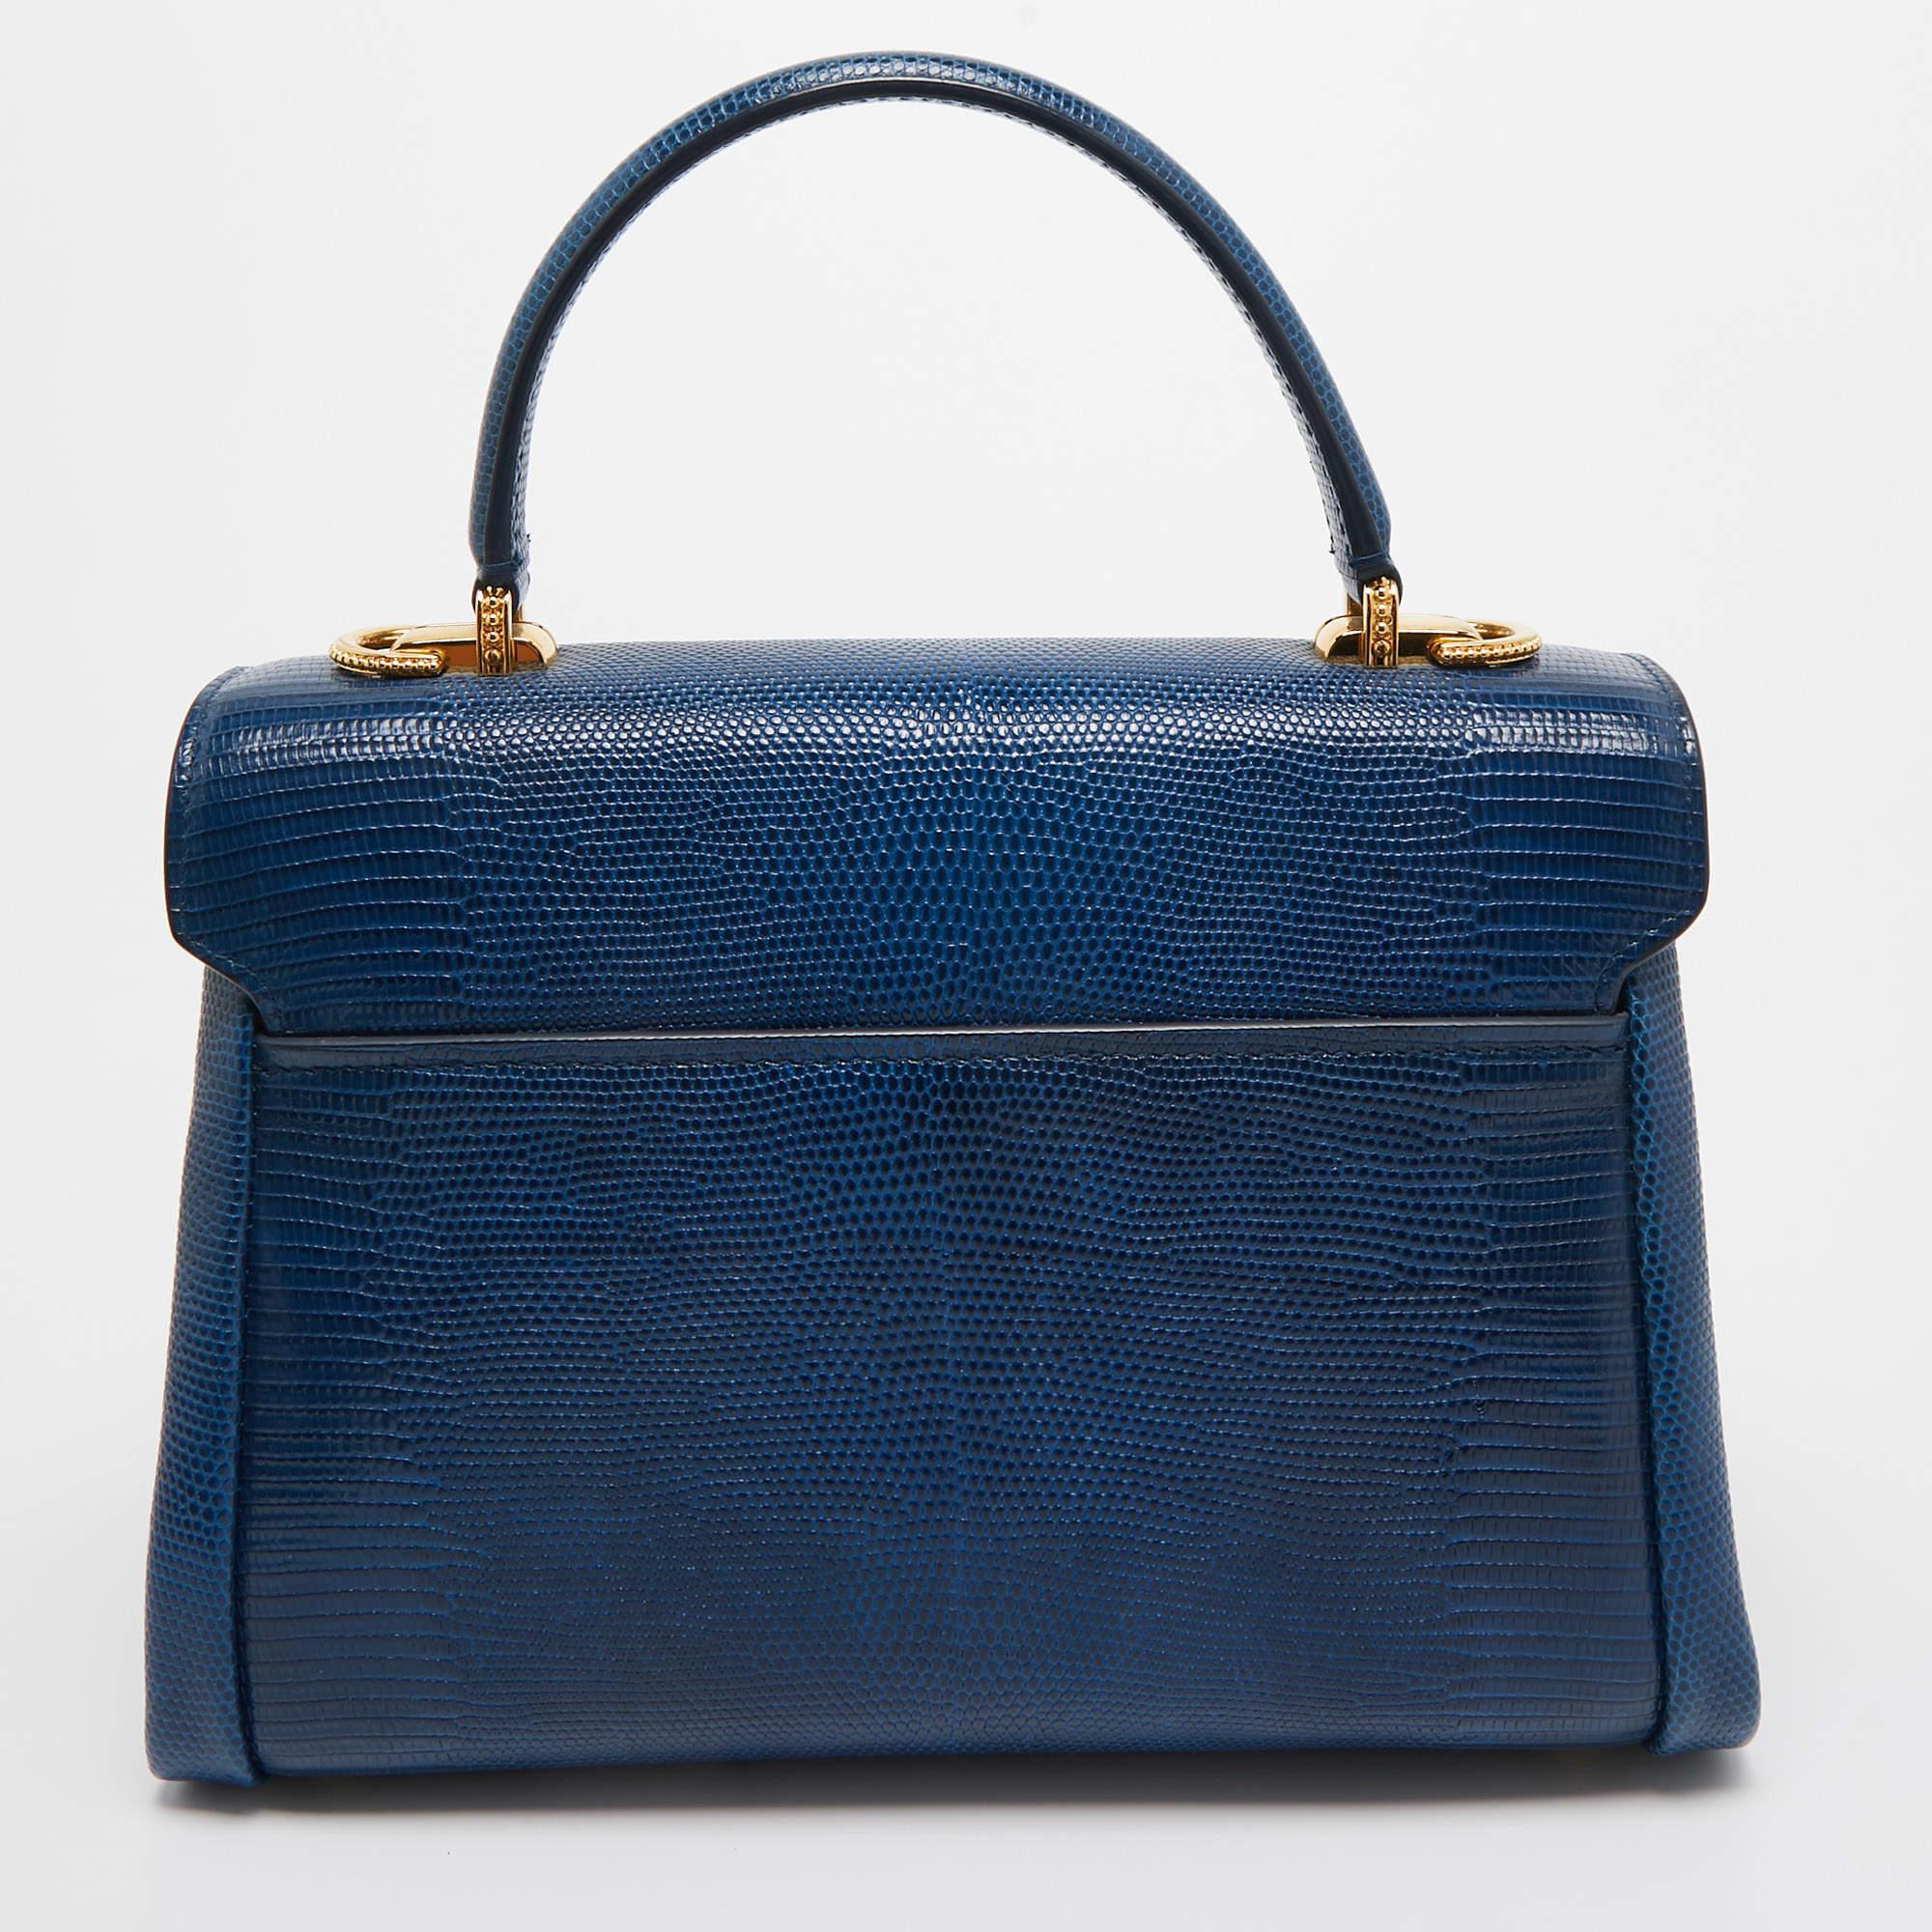 Ce sac Lucia de Dolce and Gabbana est le partenaire idéal pour les jours où vous n'avez besoin que de l'essentiel. Il est doté d'un superbe corps en cuir embossé de lézard et d'une bandoulière amovible. Il est orné d'une quincaillerie en métal doré